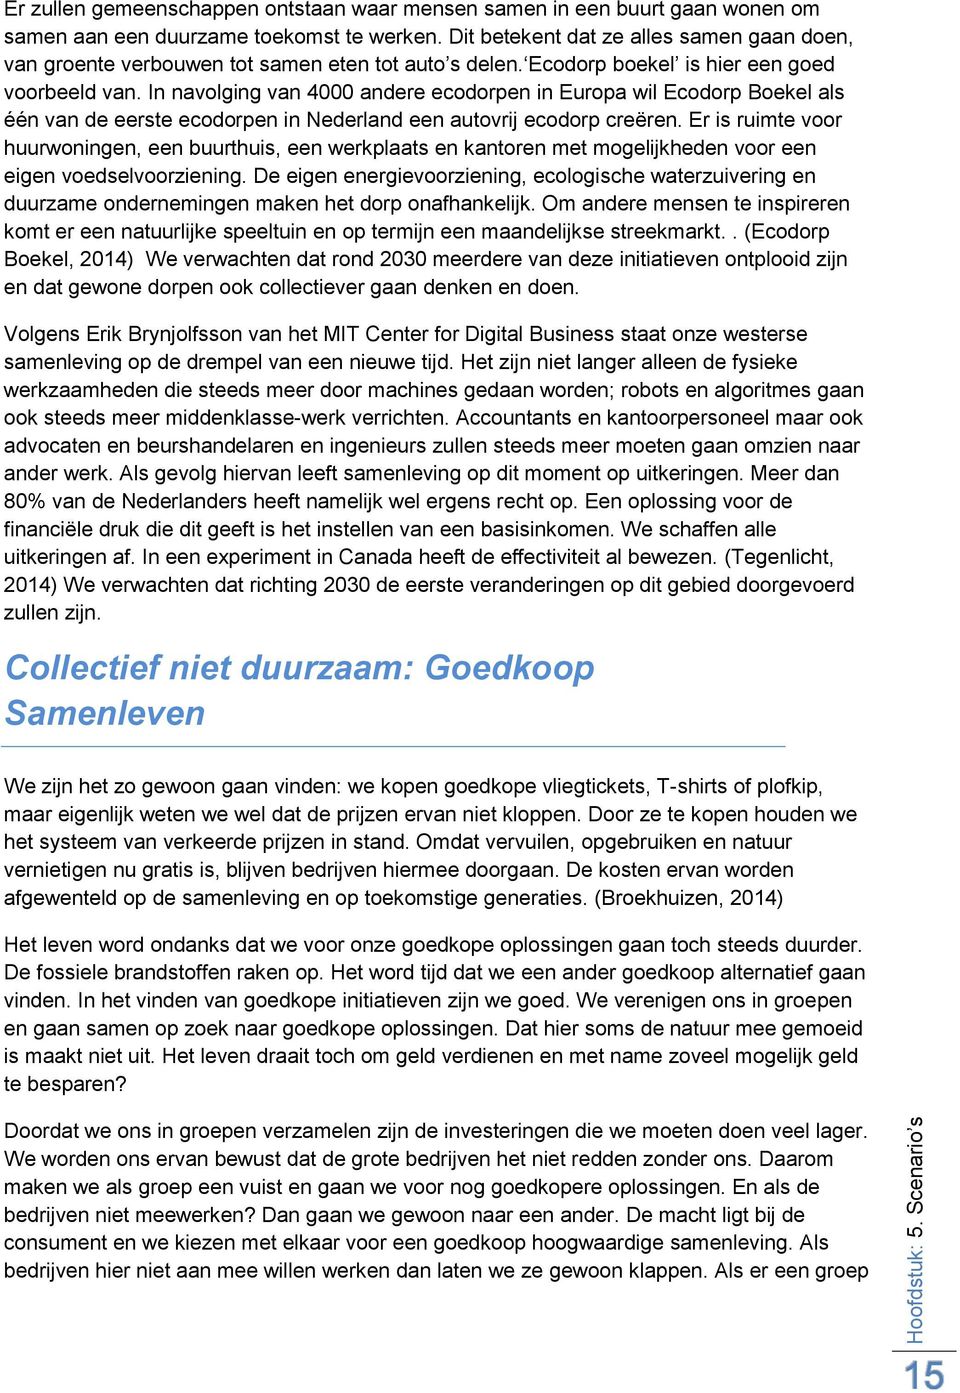 In navolging van 4000 andere ecodorpen in Europa wil Ecodorp Boekel als één van de eerste ecodorpen in Nederland een autovrij ecodorp creëren.